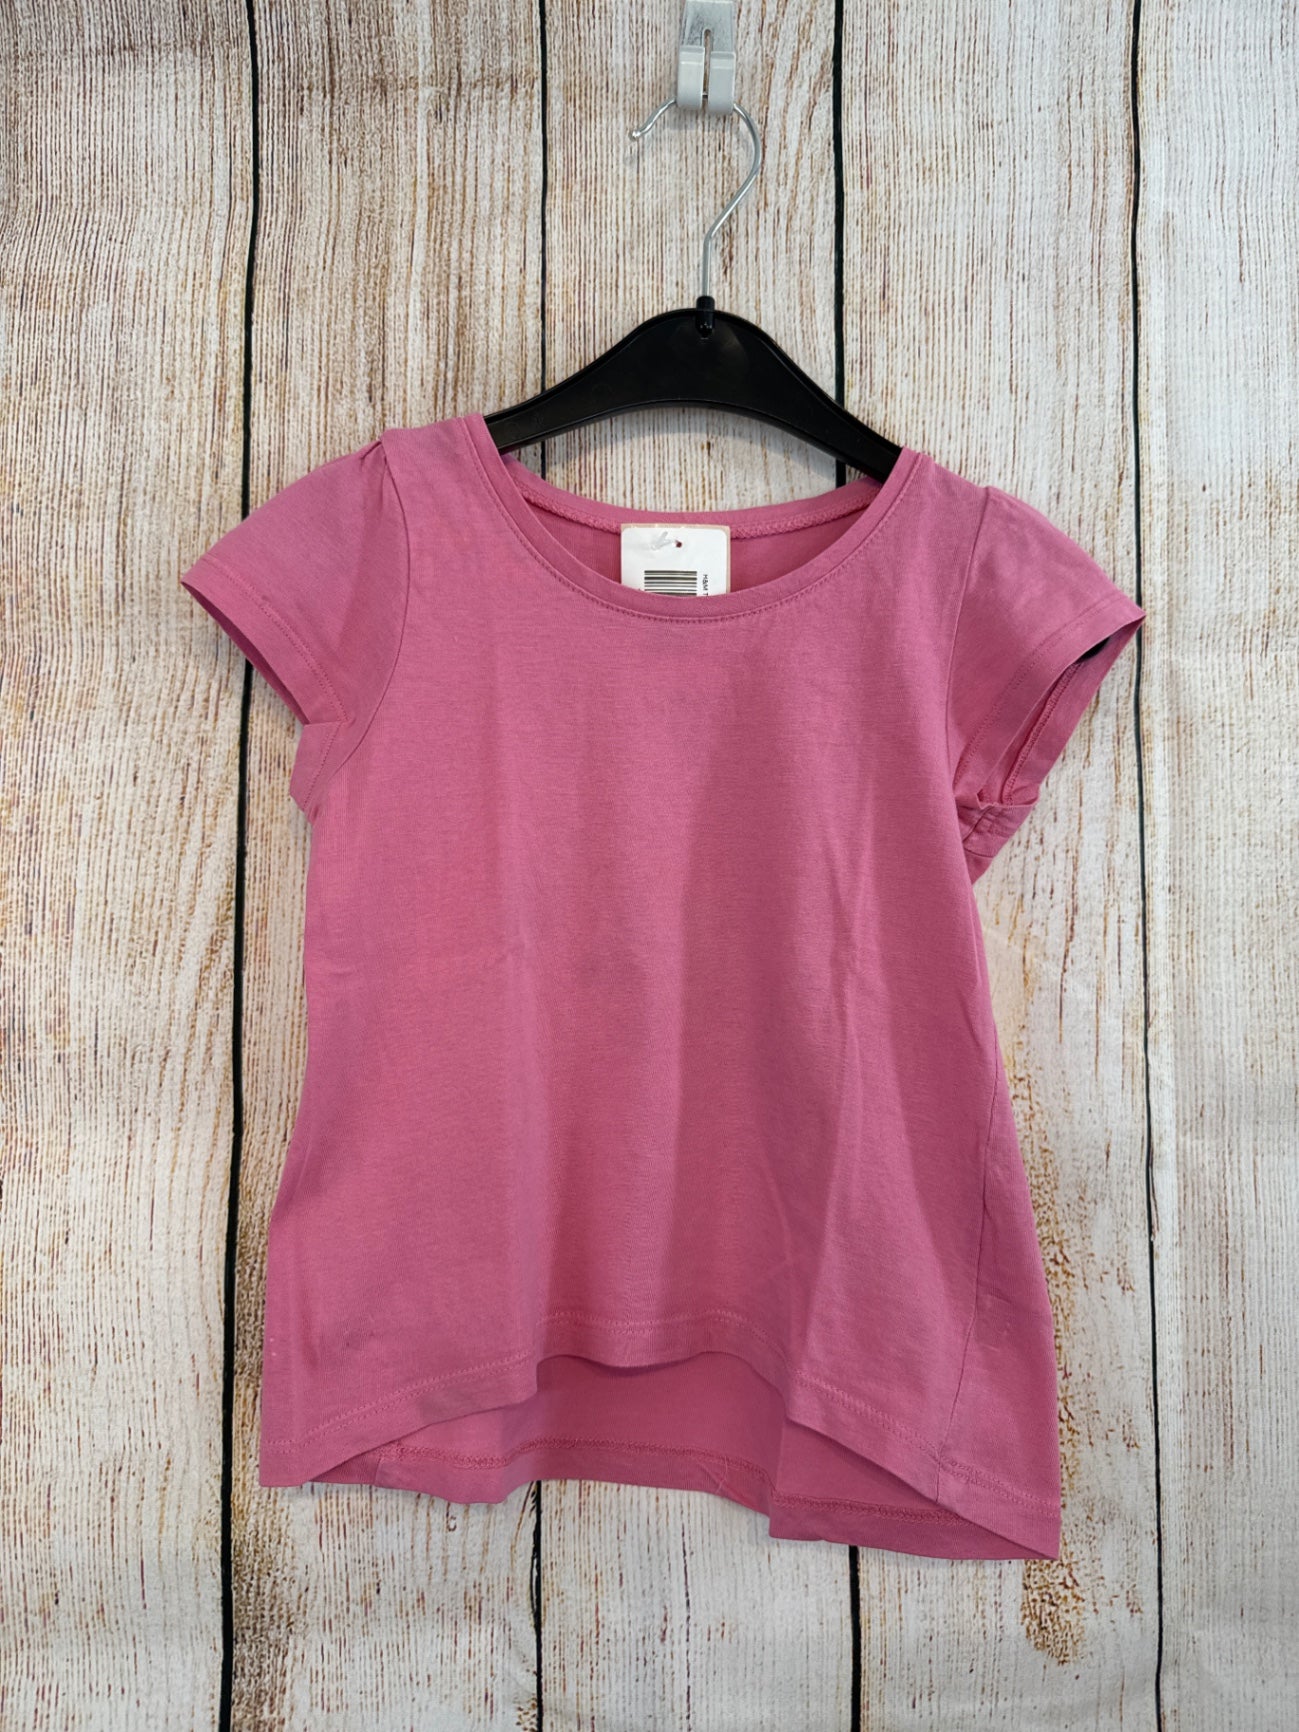 H&M T-Shirt Pink Gr. 98